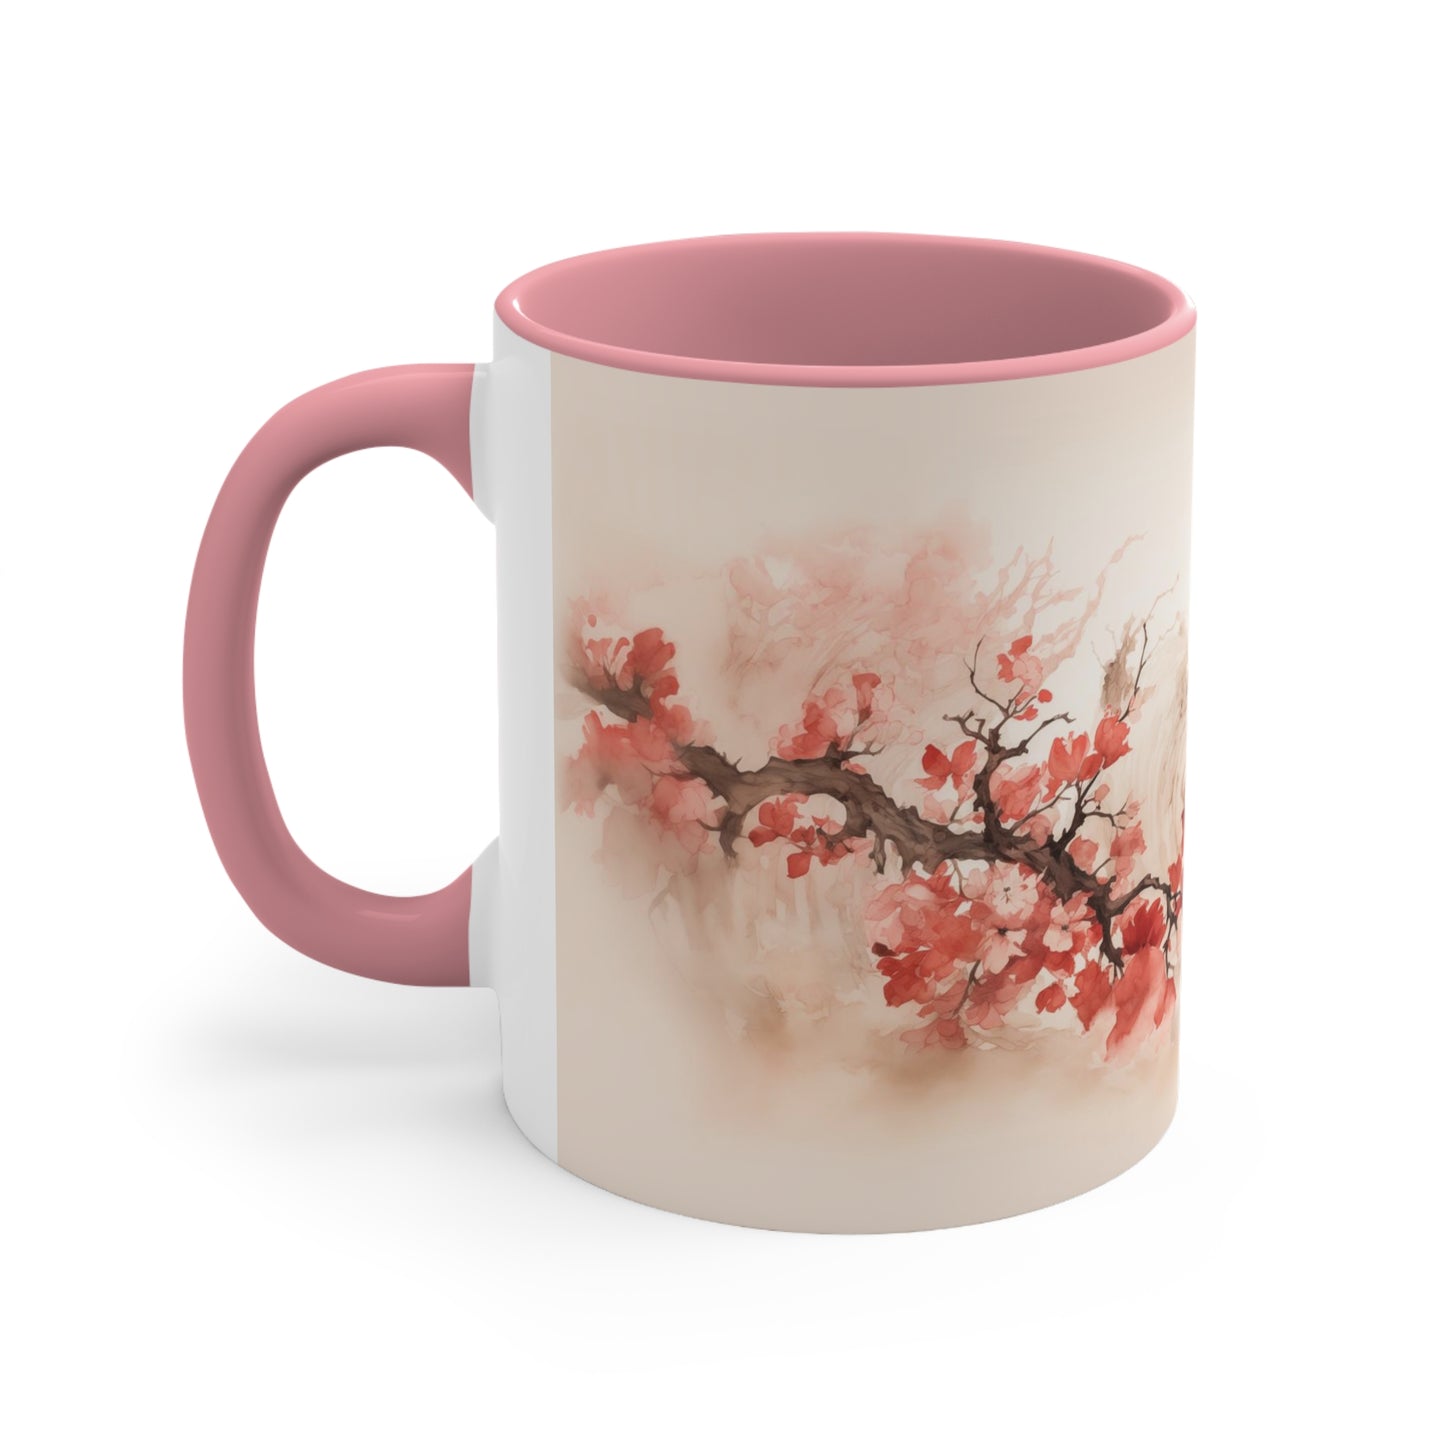 Exquisite Blossom Beauty Coffee Mug, 11oz